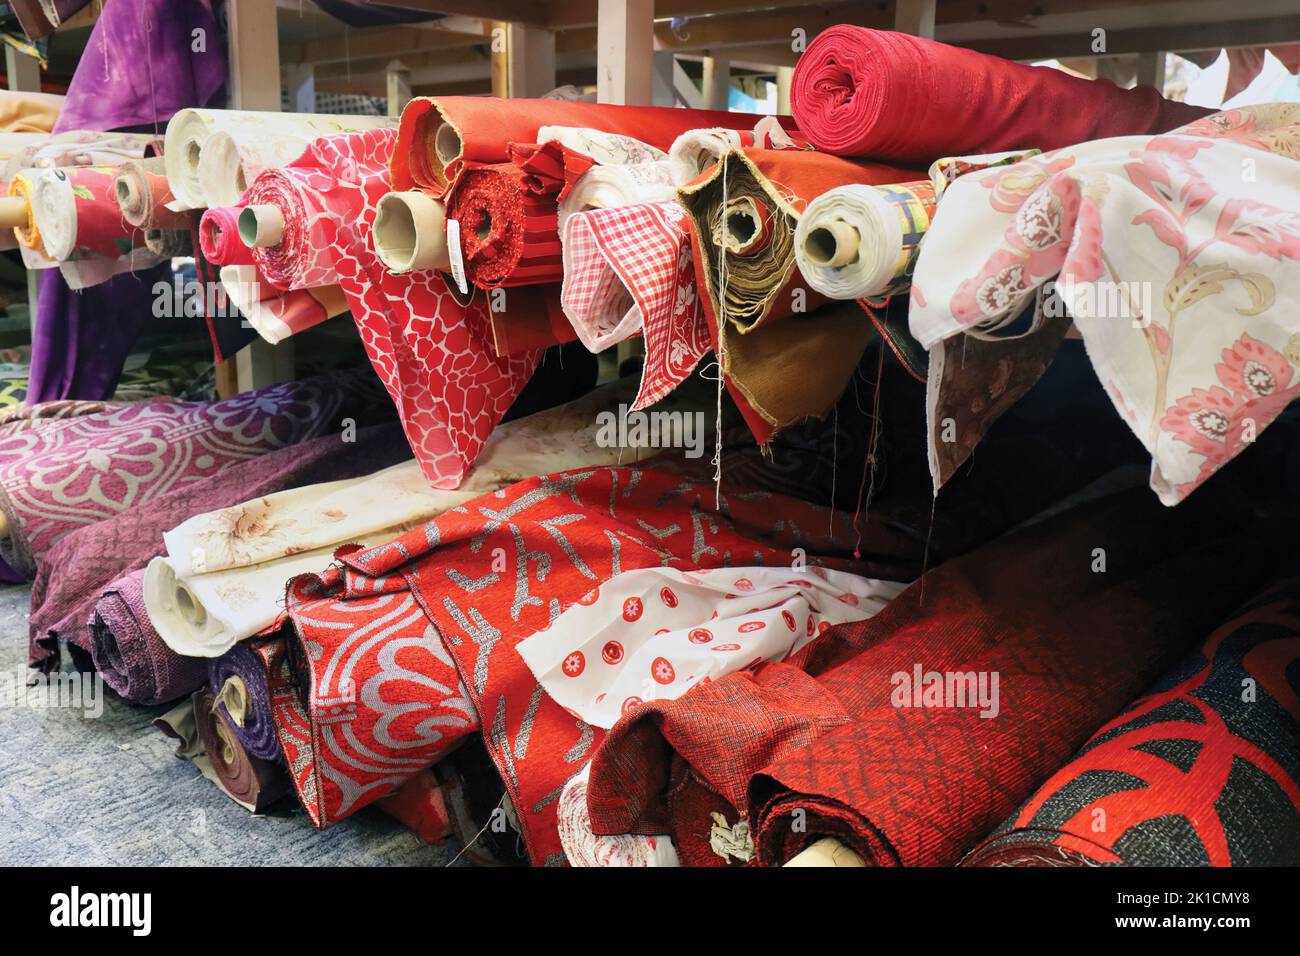 Rollos de material en una tienda de tejidos. Foto de stock